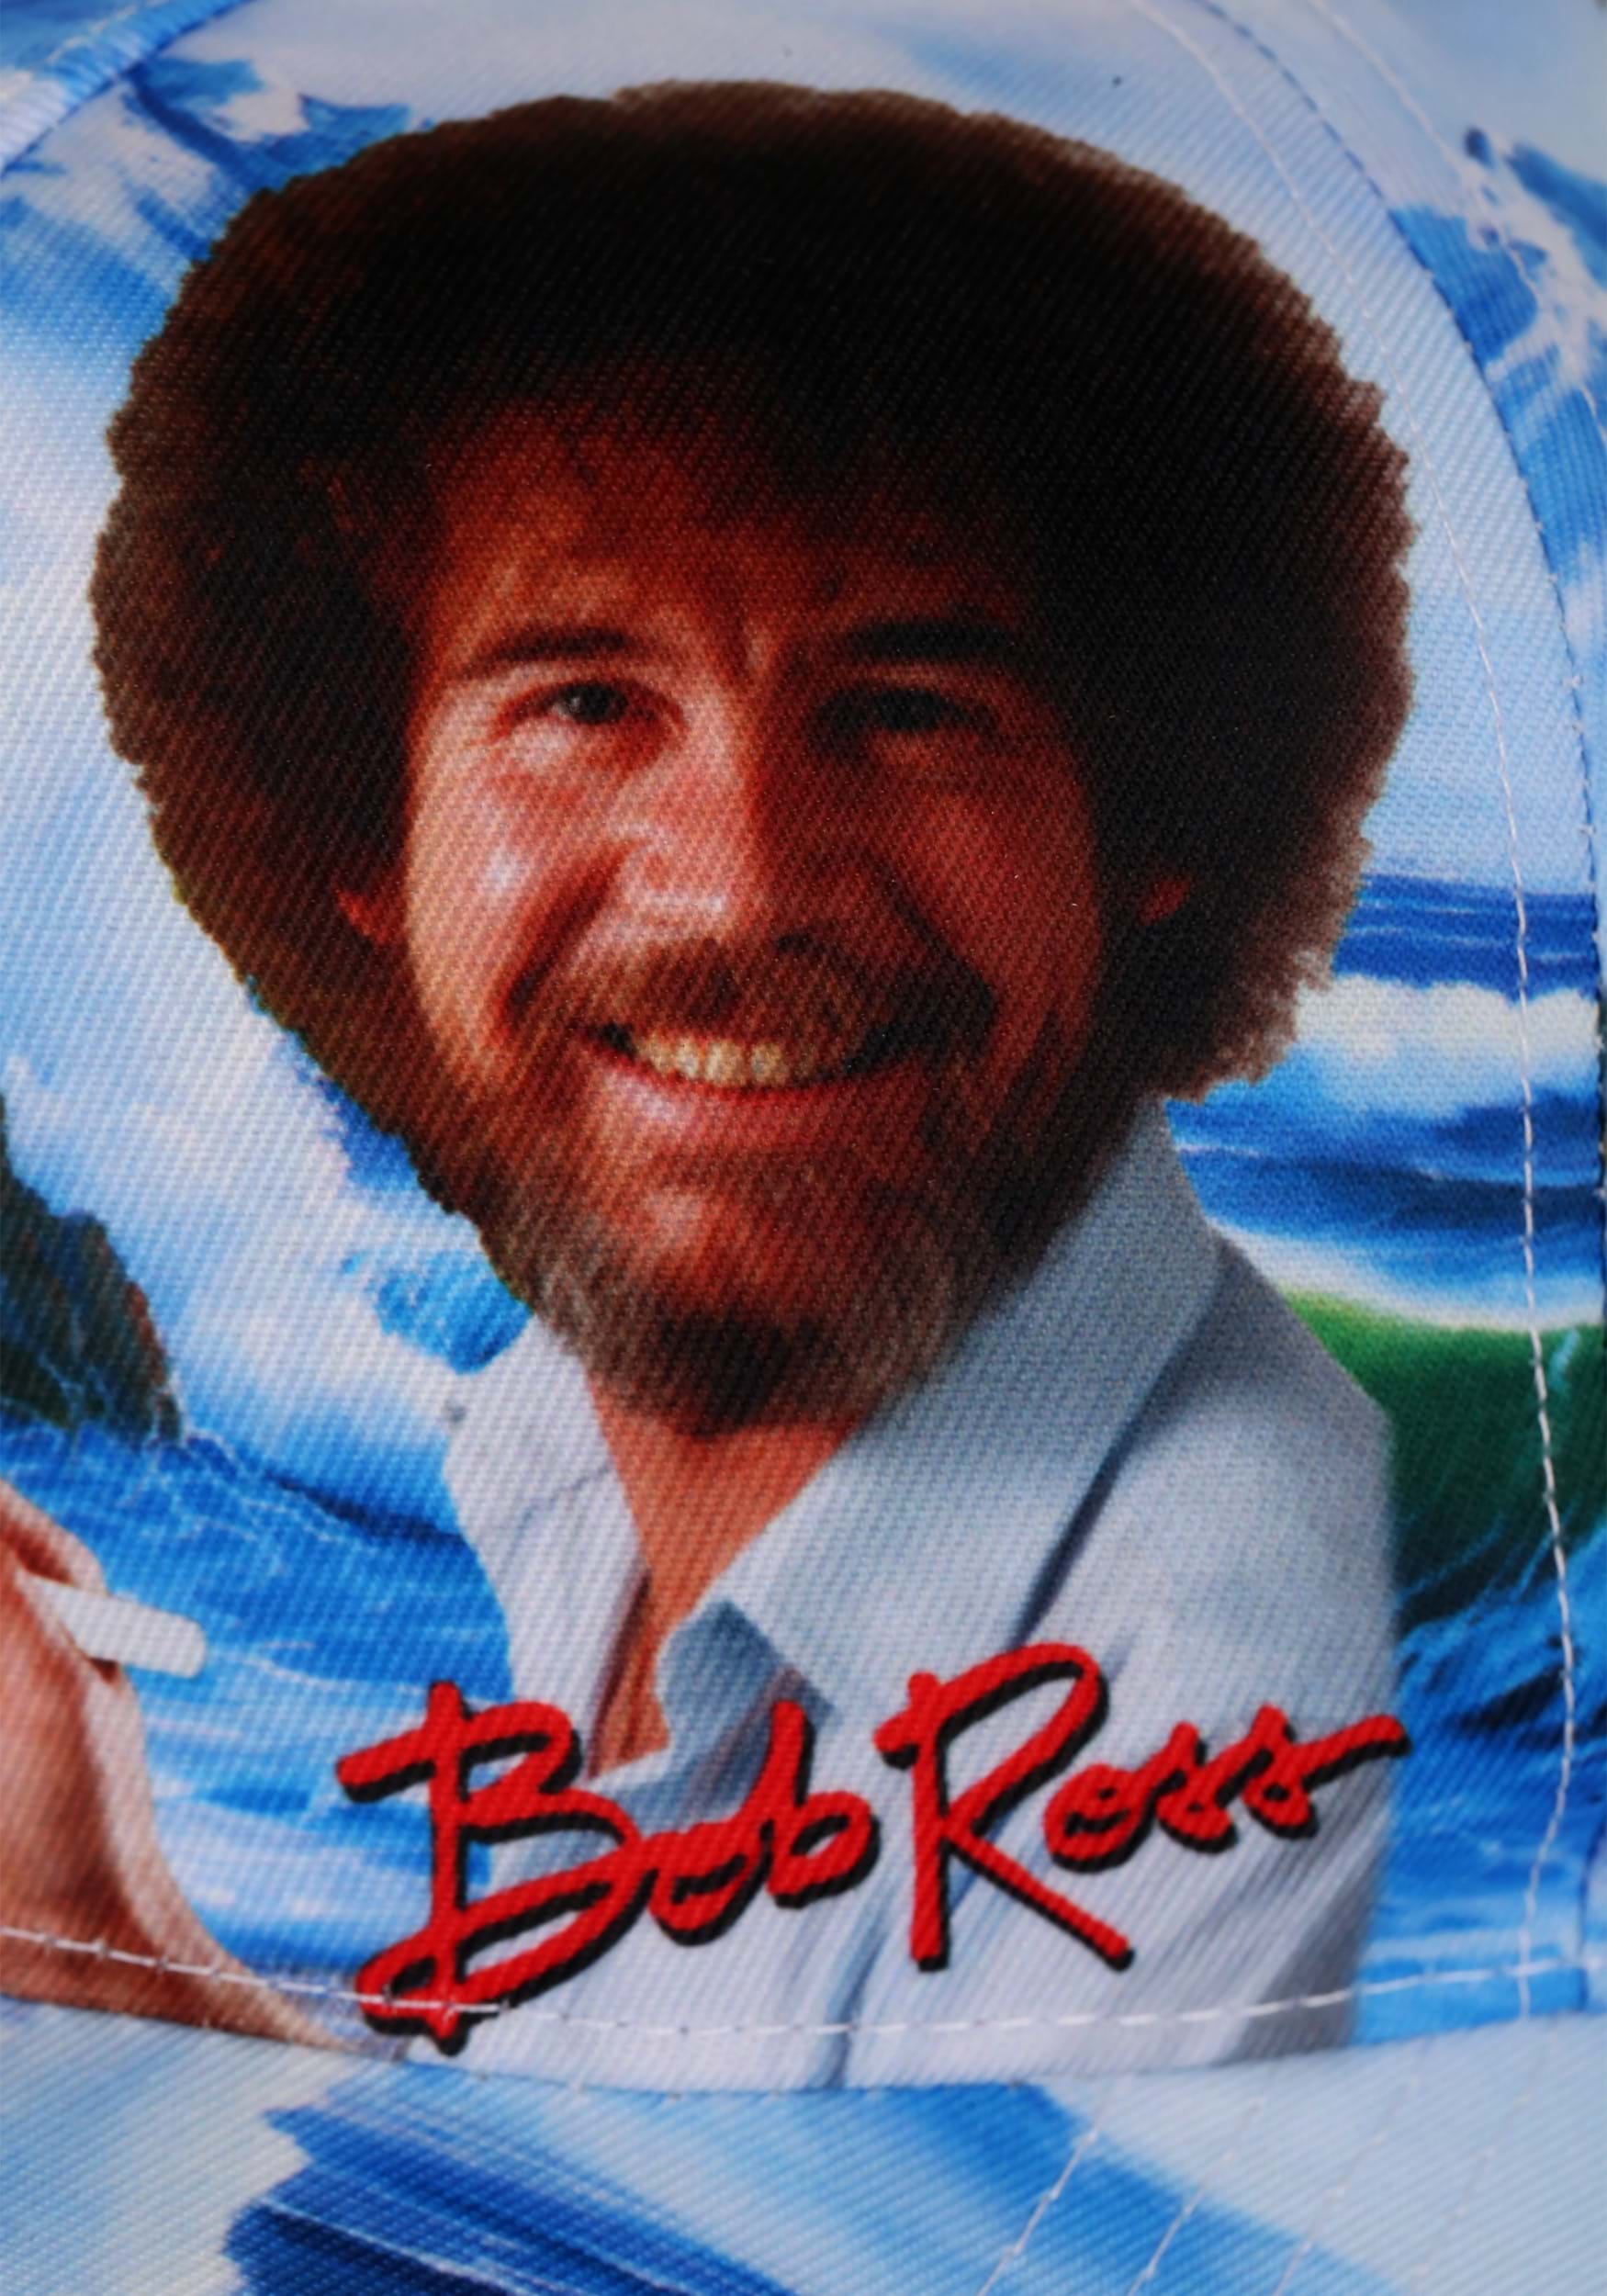 Adult Bob Ross Painting Baseball Cap